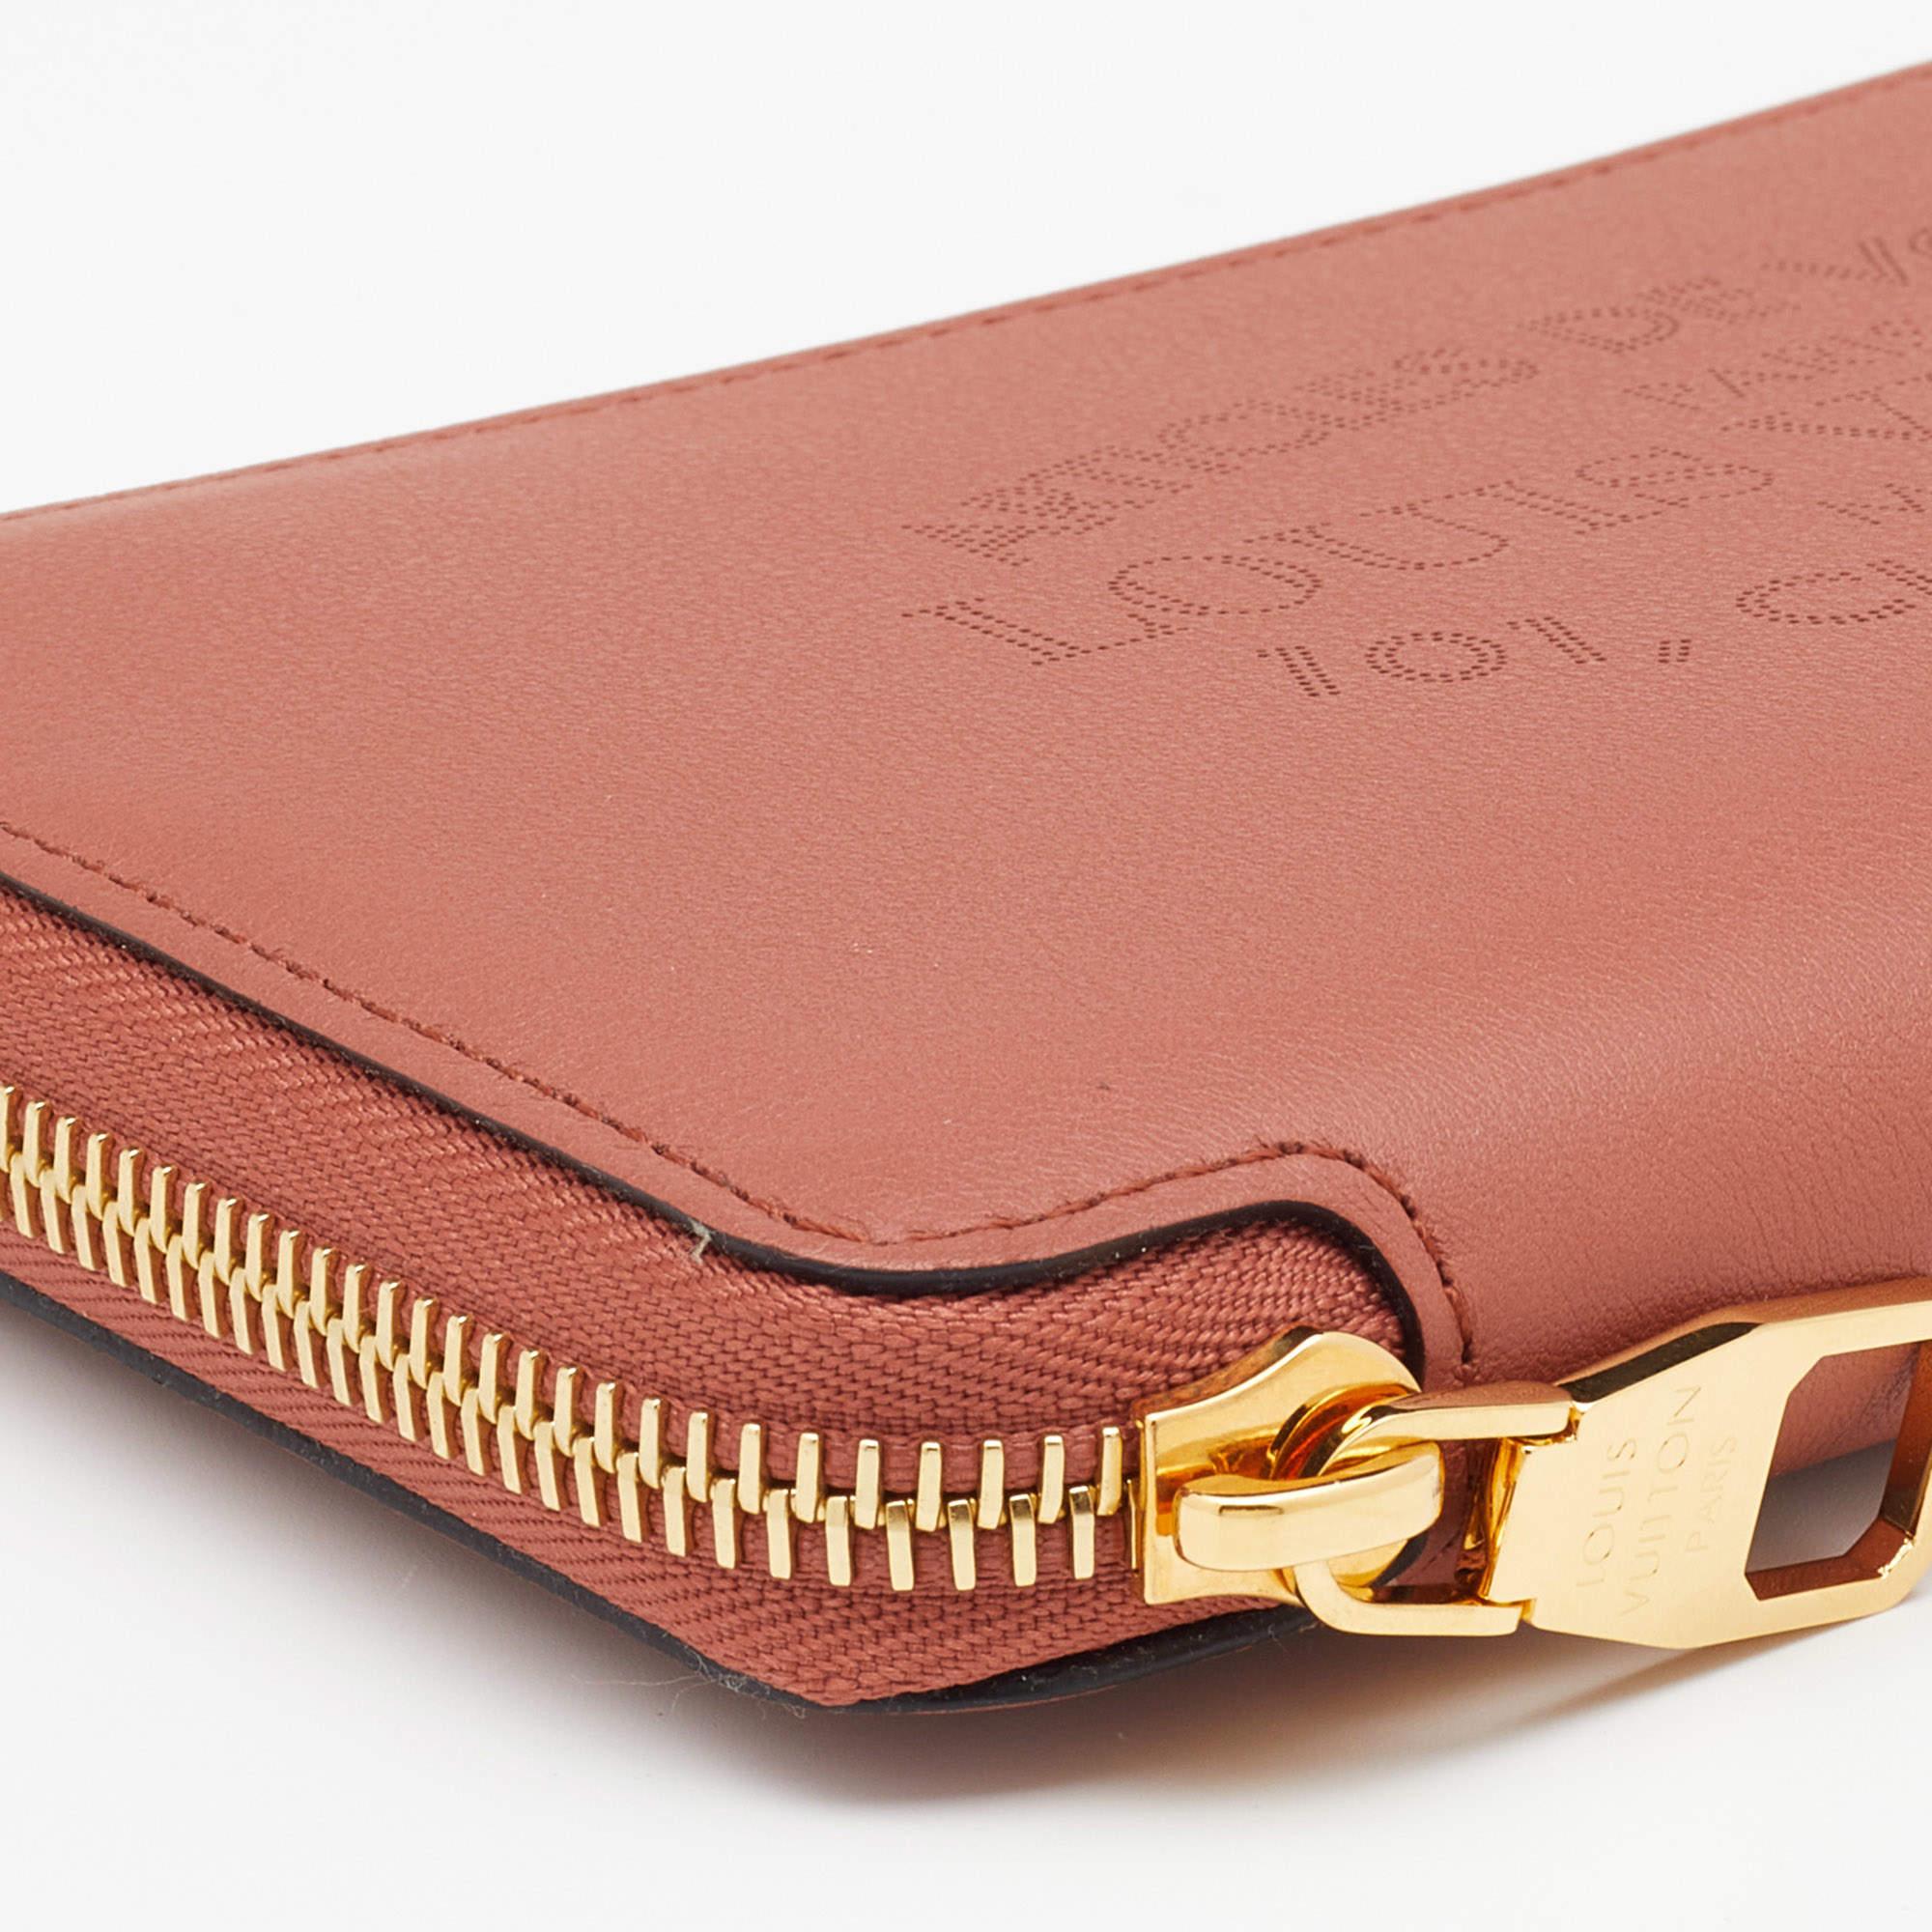 Louis Vuitton Brick Red Leather Article De Voyage Zippy Wallet 2